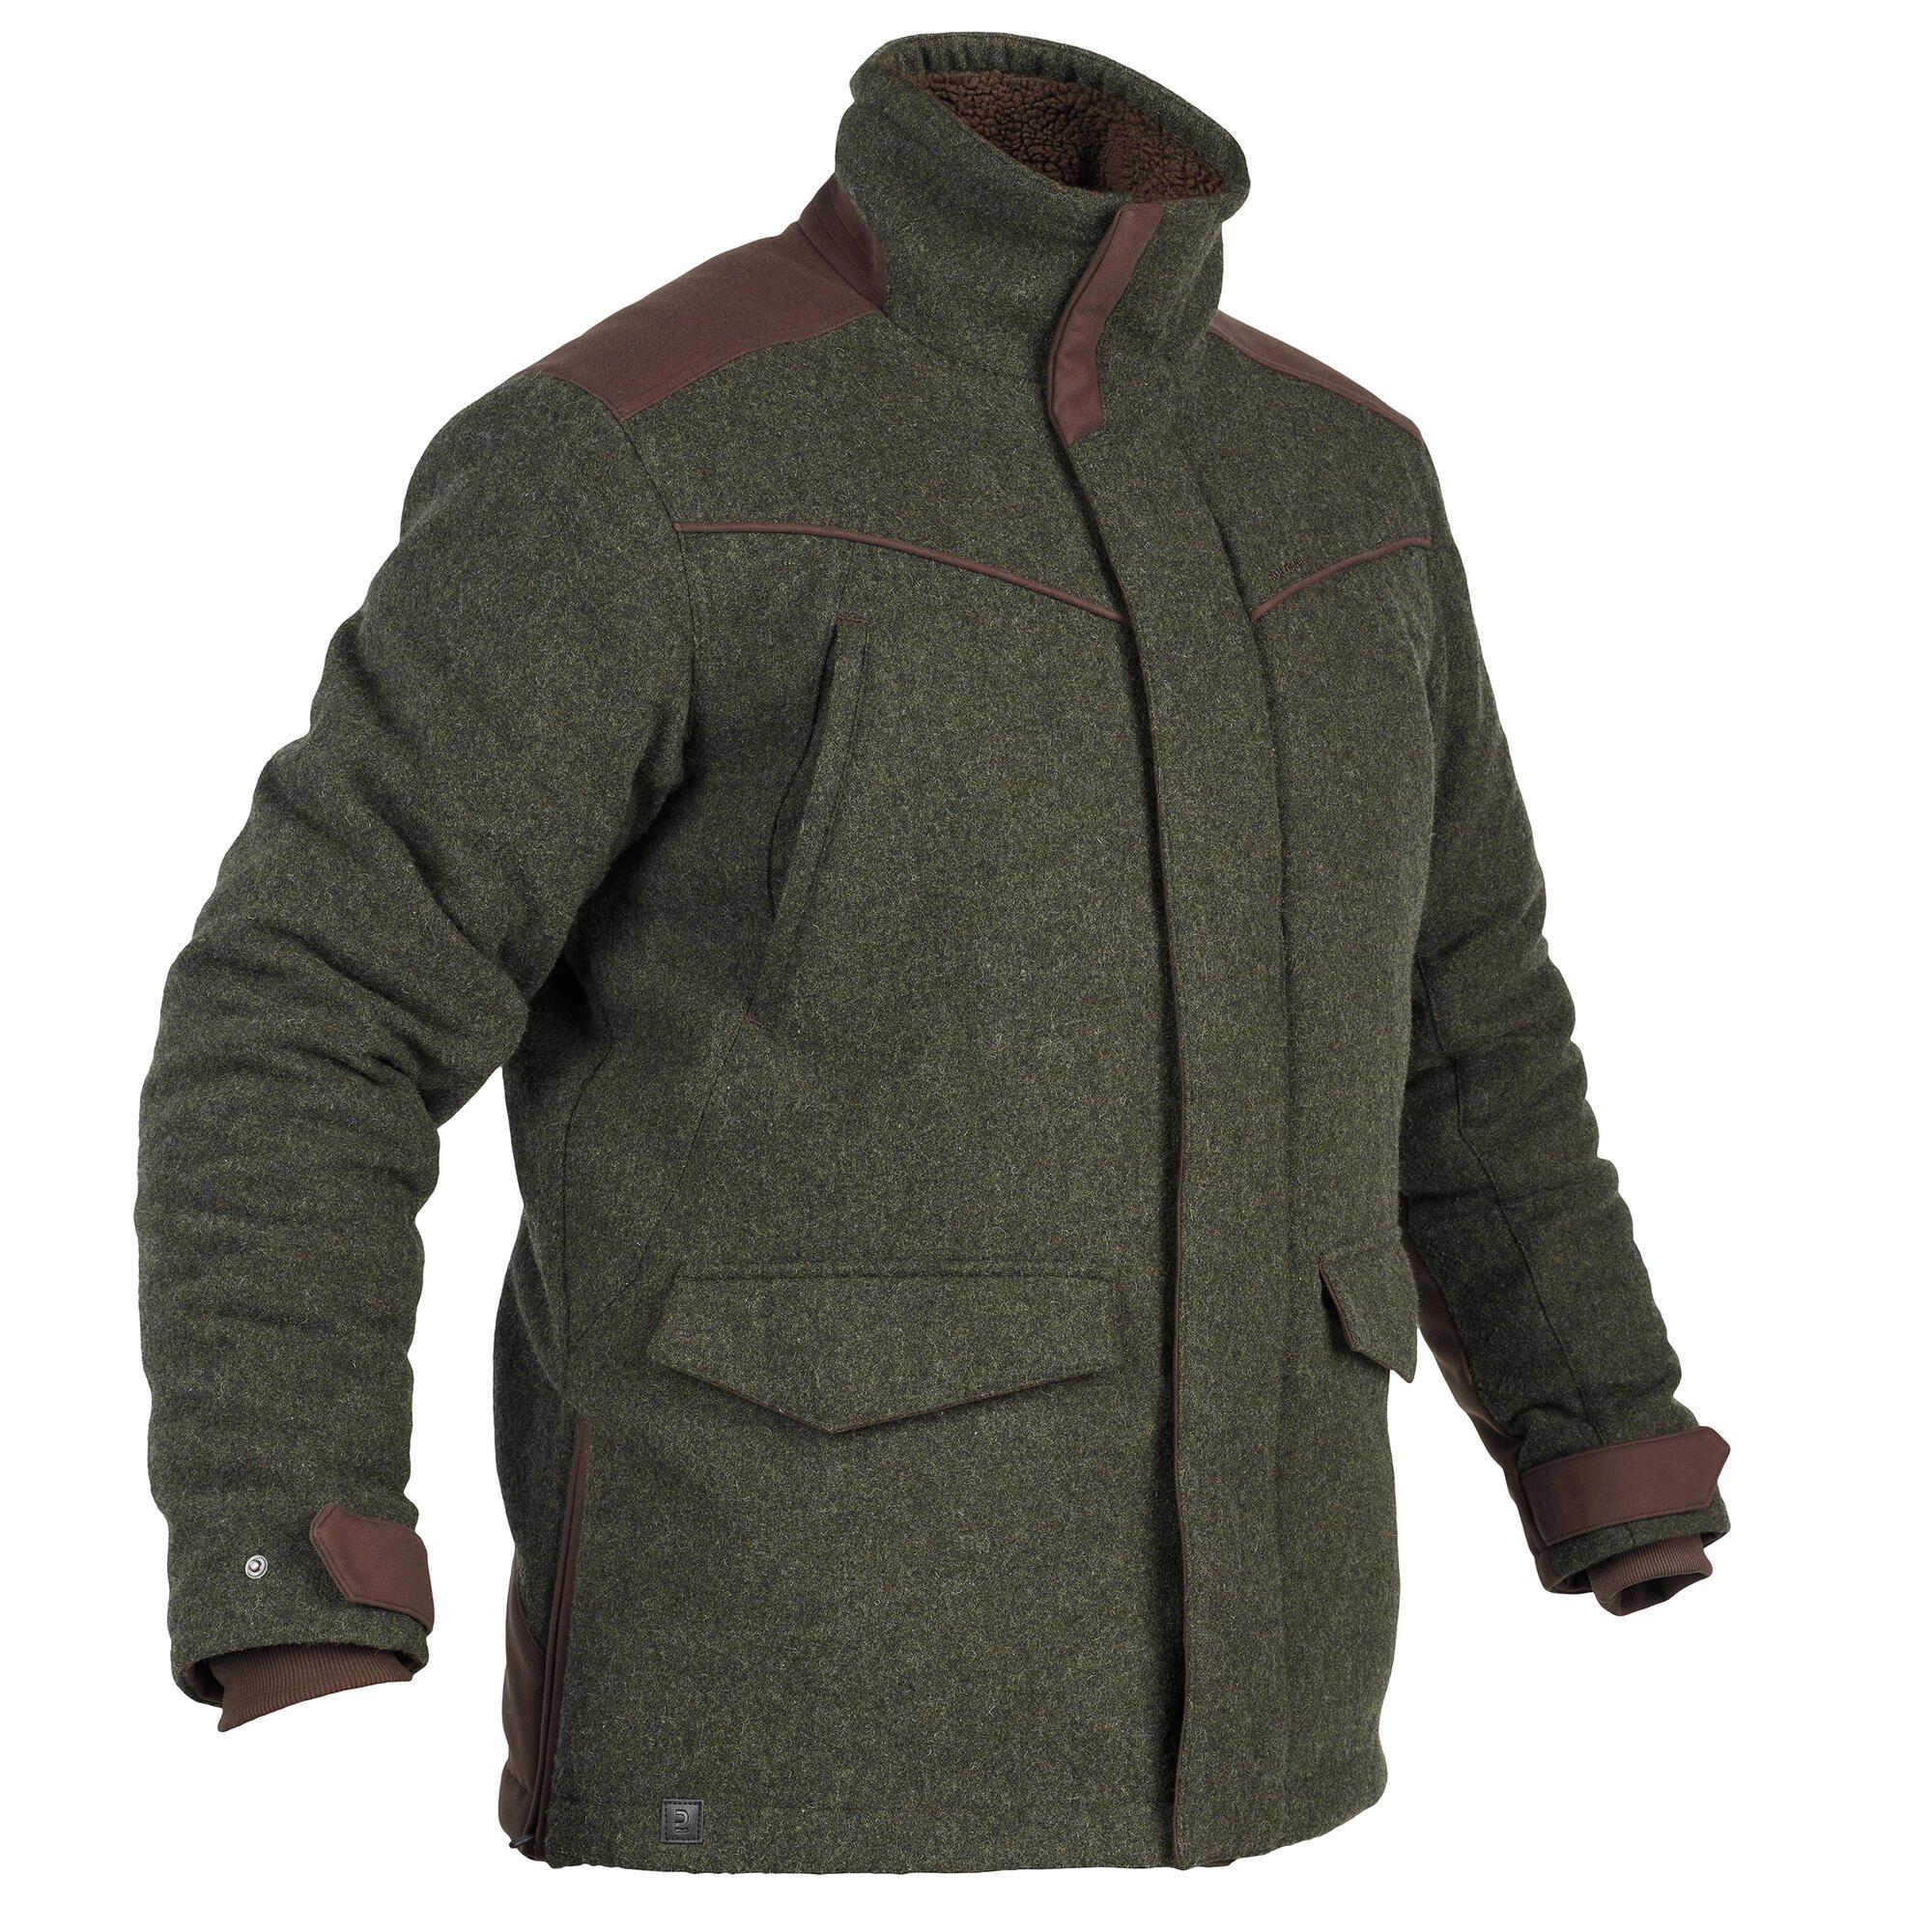 Теплая шерстяная спортивная куртка Decathlon Silent Country 900 Solognac, зеленый фотографии